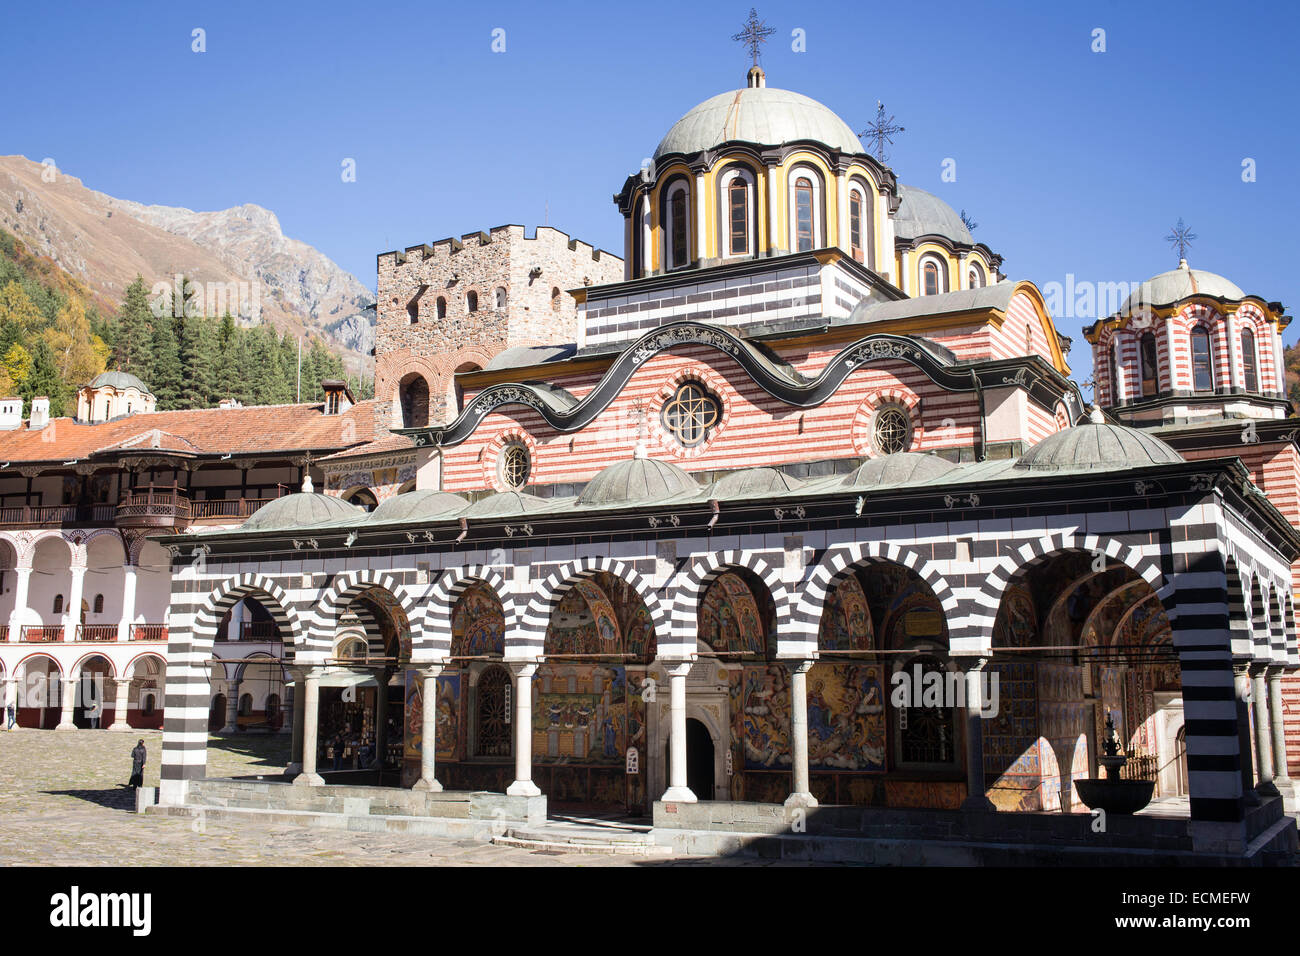 Courtyard with abbey church, Rila Monastery, UNESCO World Heritage Site, Rila Mountains, Rila, Bulgaria Stock Photo